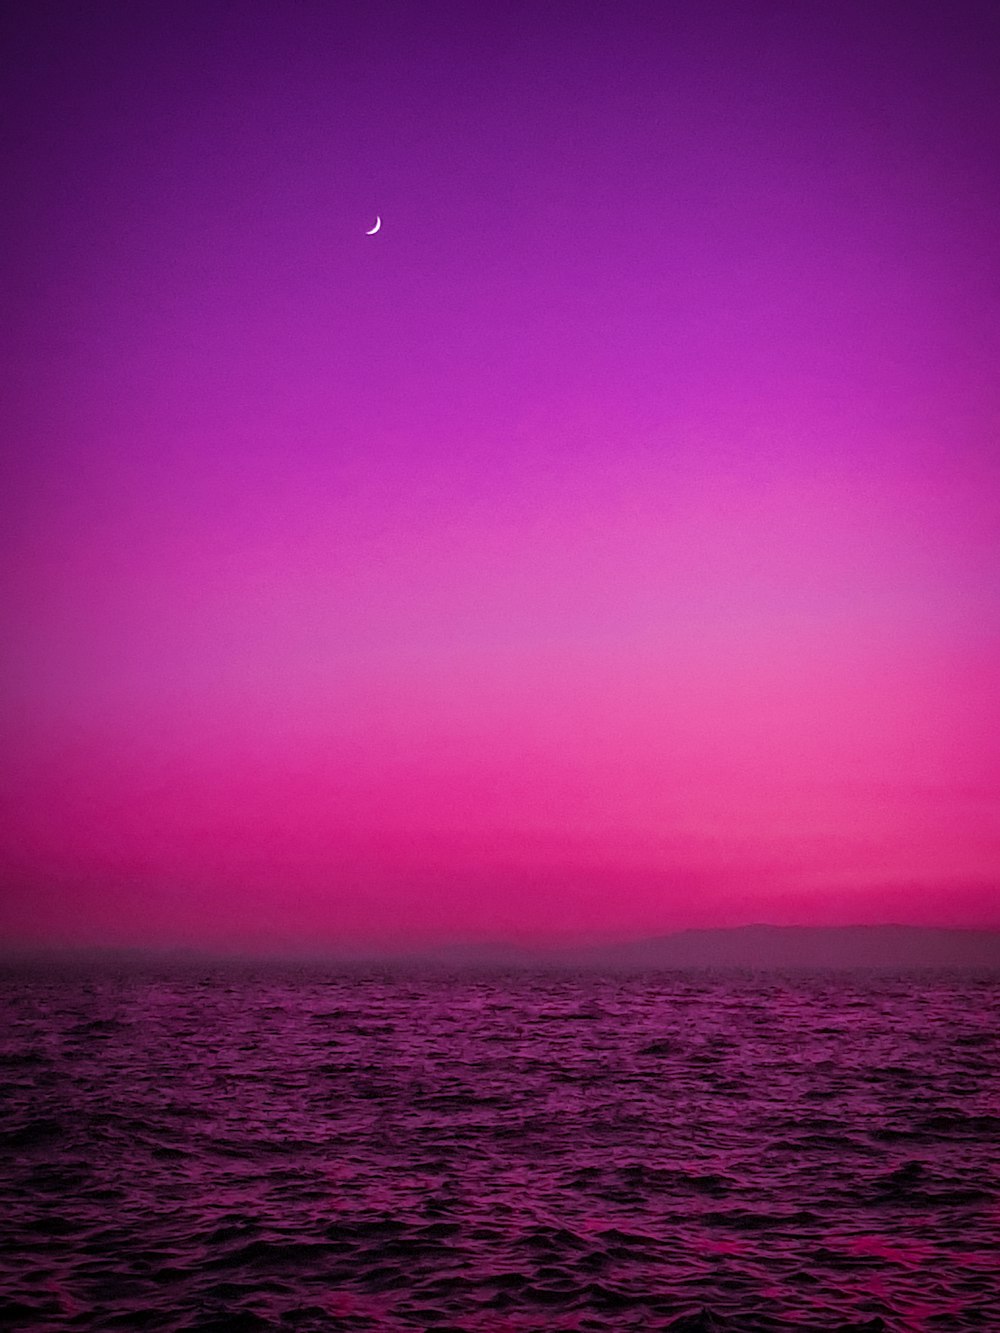 body of water under purple sky